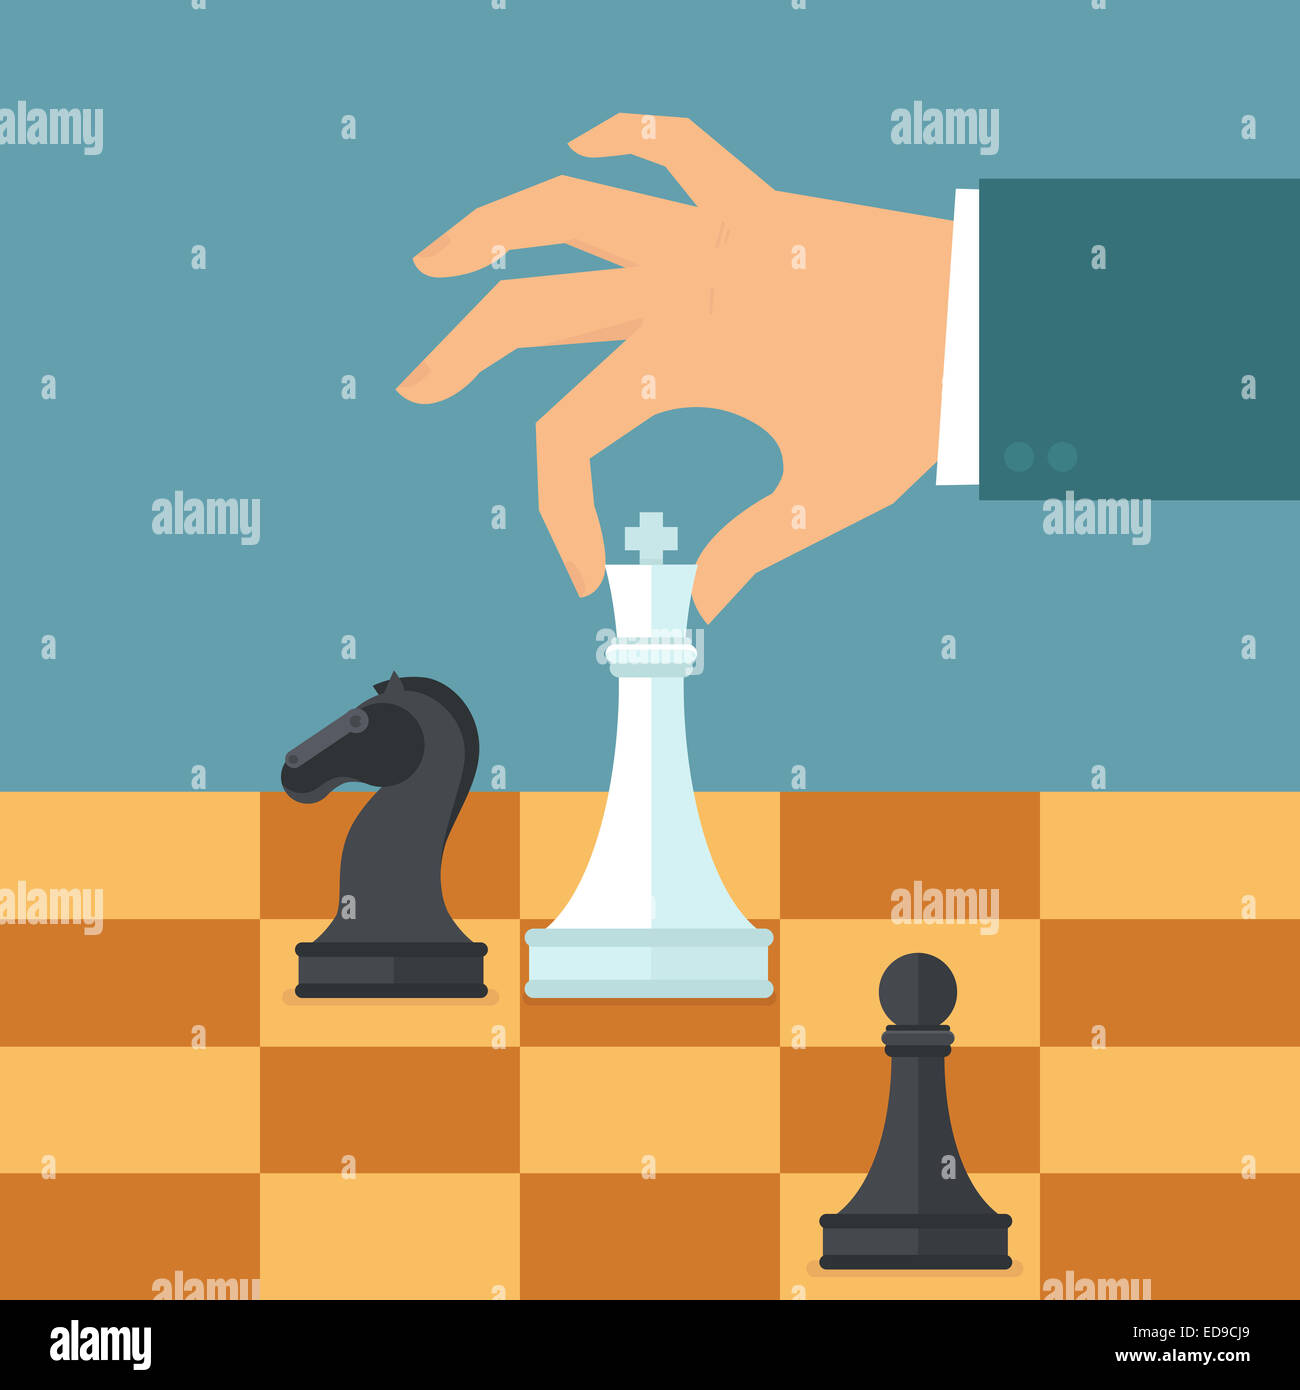 Business-Strategie-Konzept in flachen Stil - männliche Hand, die Schachfigur - Planung und management Stockfoto